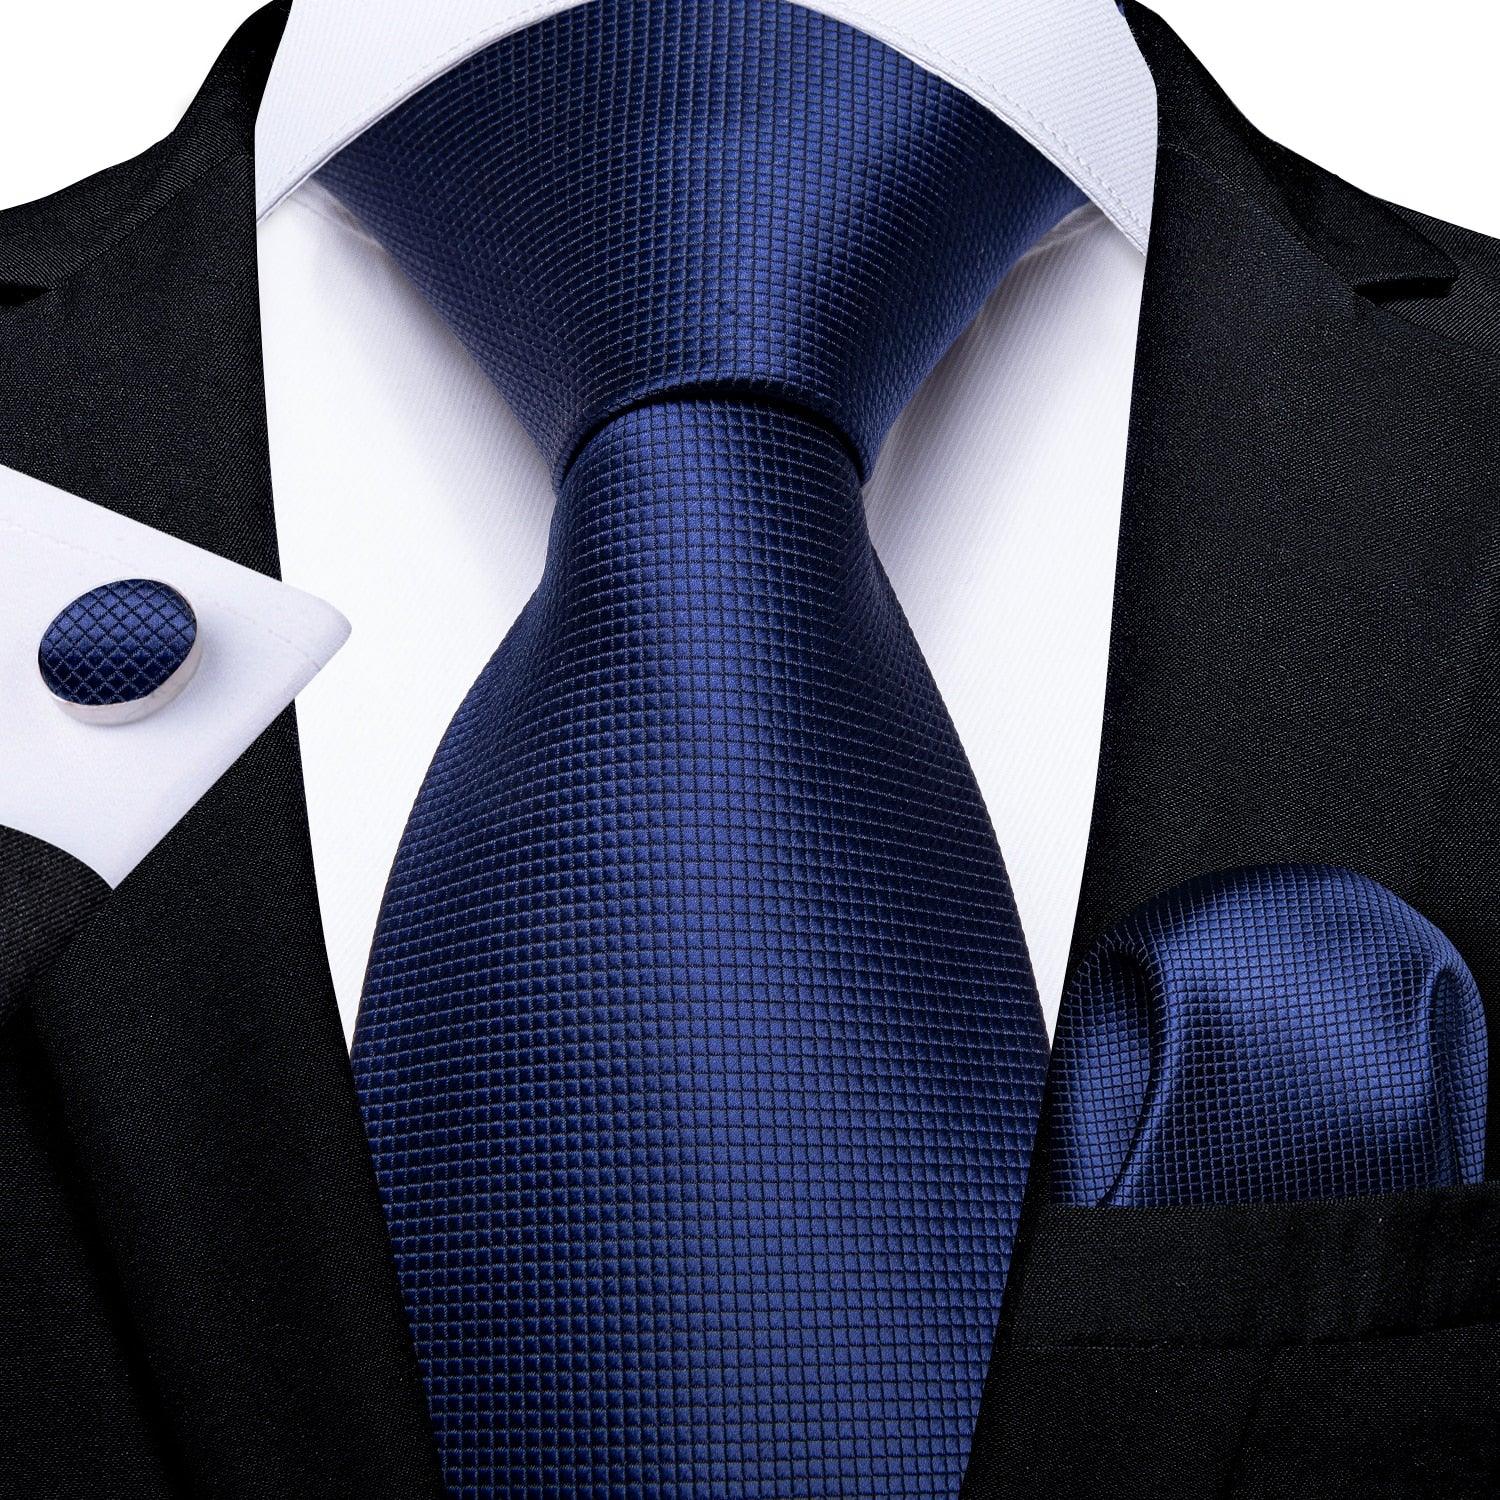 Men's Accessories - Ties Men Necktie Teal Blue Paisley Designer Silk Wedding Tie Hanky Cufflink Set